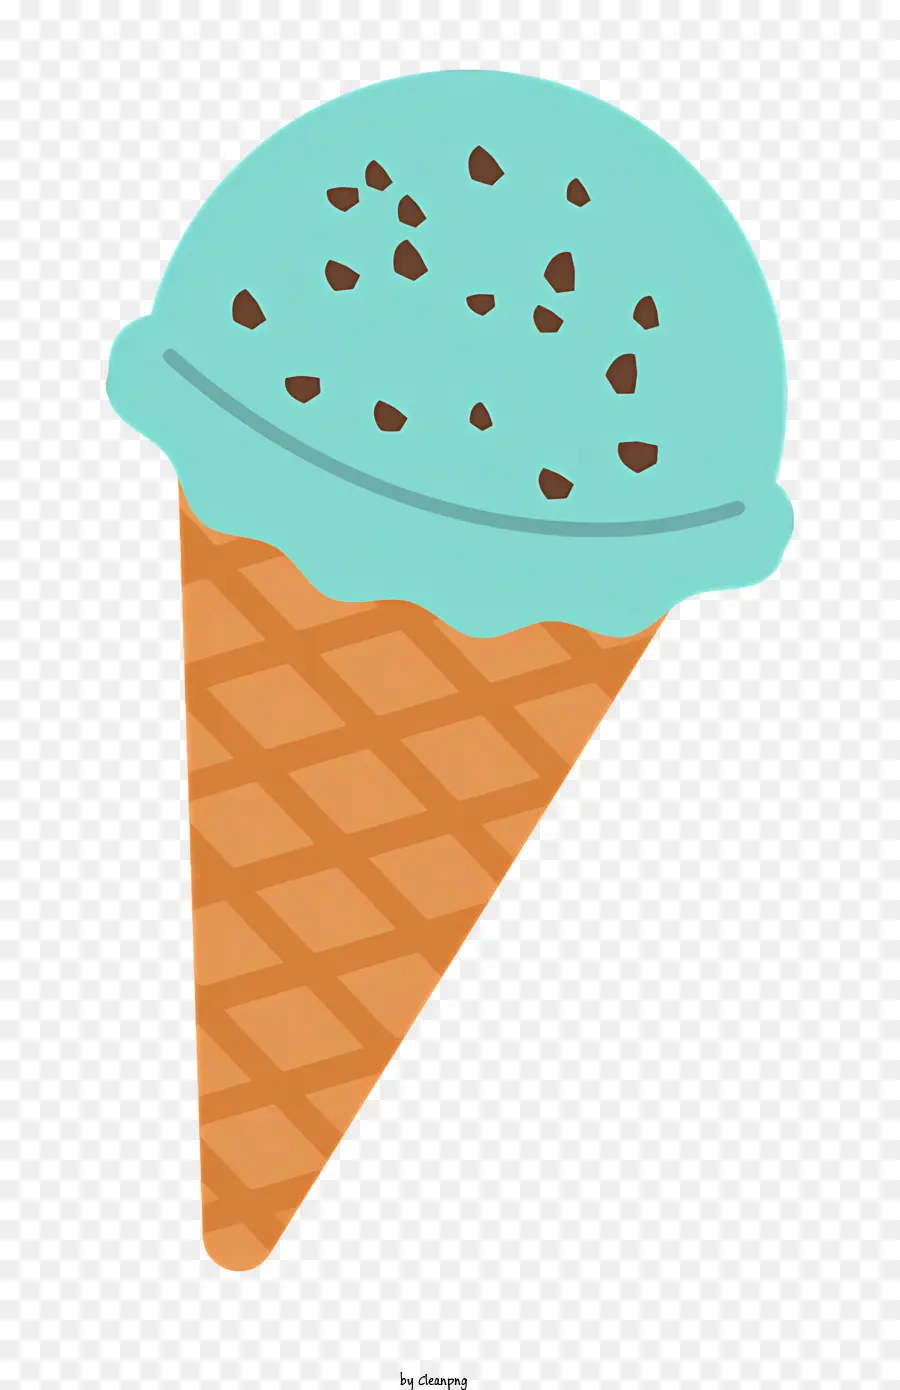 cibo gelato cono cioccolato gocce di cioccolato blu ghiotti bianchi - Cono di gelato blu con gocce di cioccolato